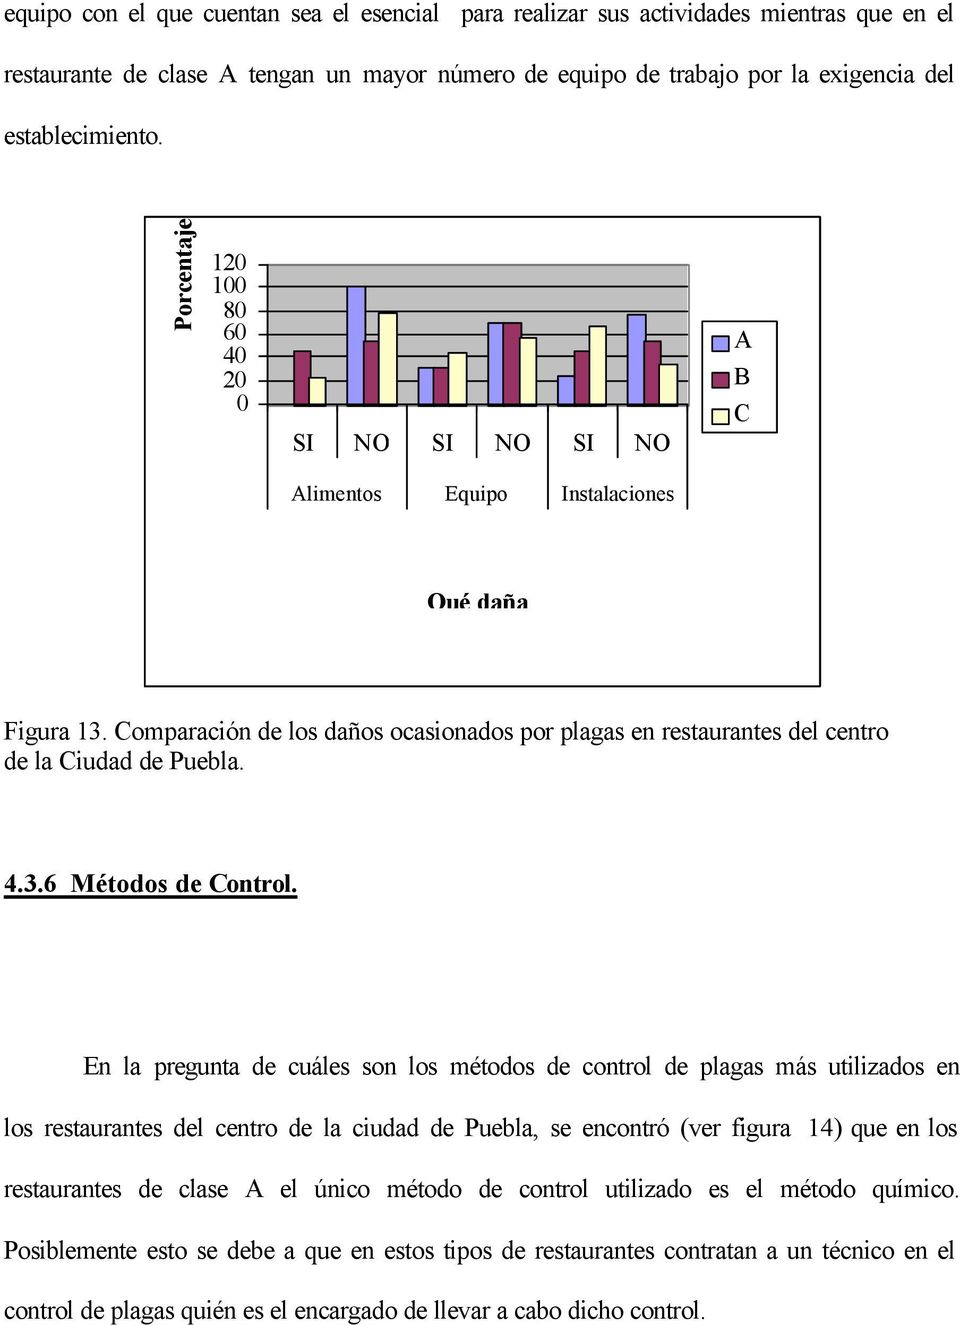 En la pregunta de cuáles son los métodos de control de plagas más utilizados en los restaurantes del centro de la ciudad de Puebla, se encontró (ver figura 14) que en los restaurantes de clase A el